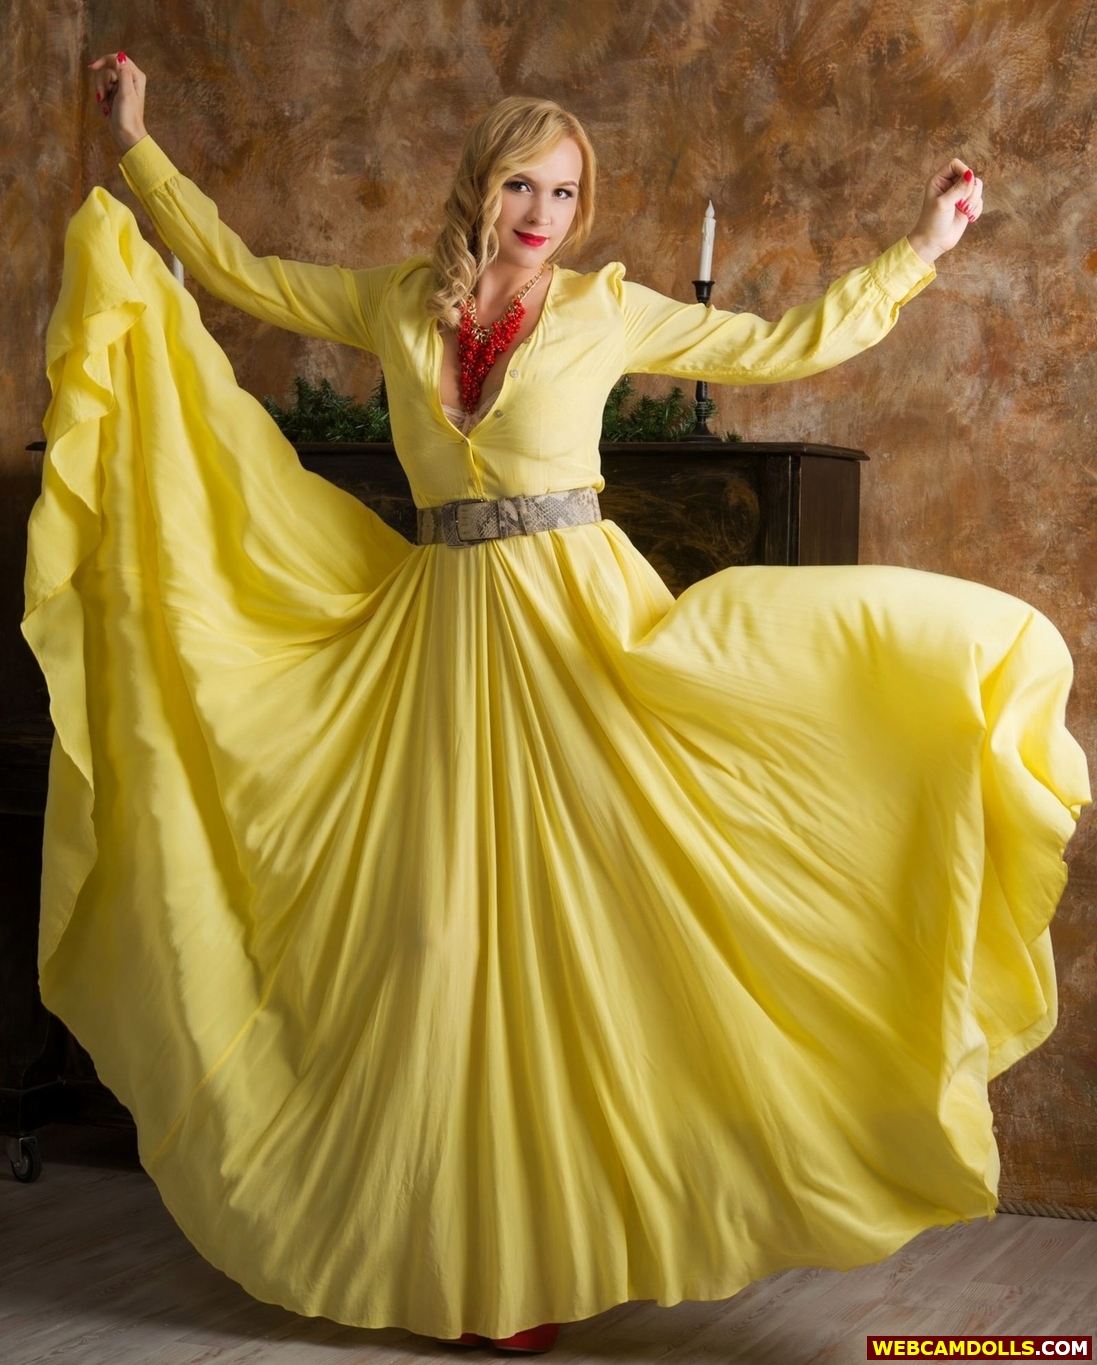 Blonde MILF wearing Lace Bra under Yellow Long Dress on Webcamdolls